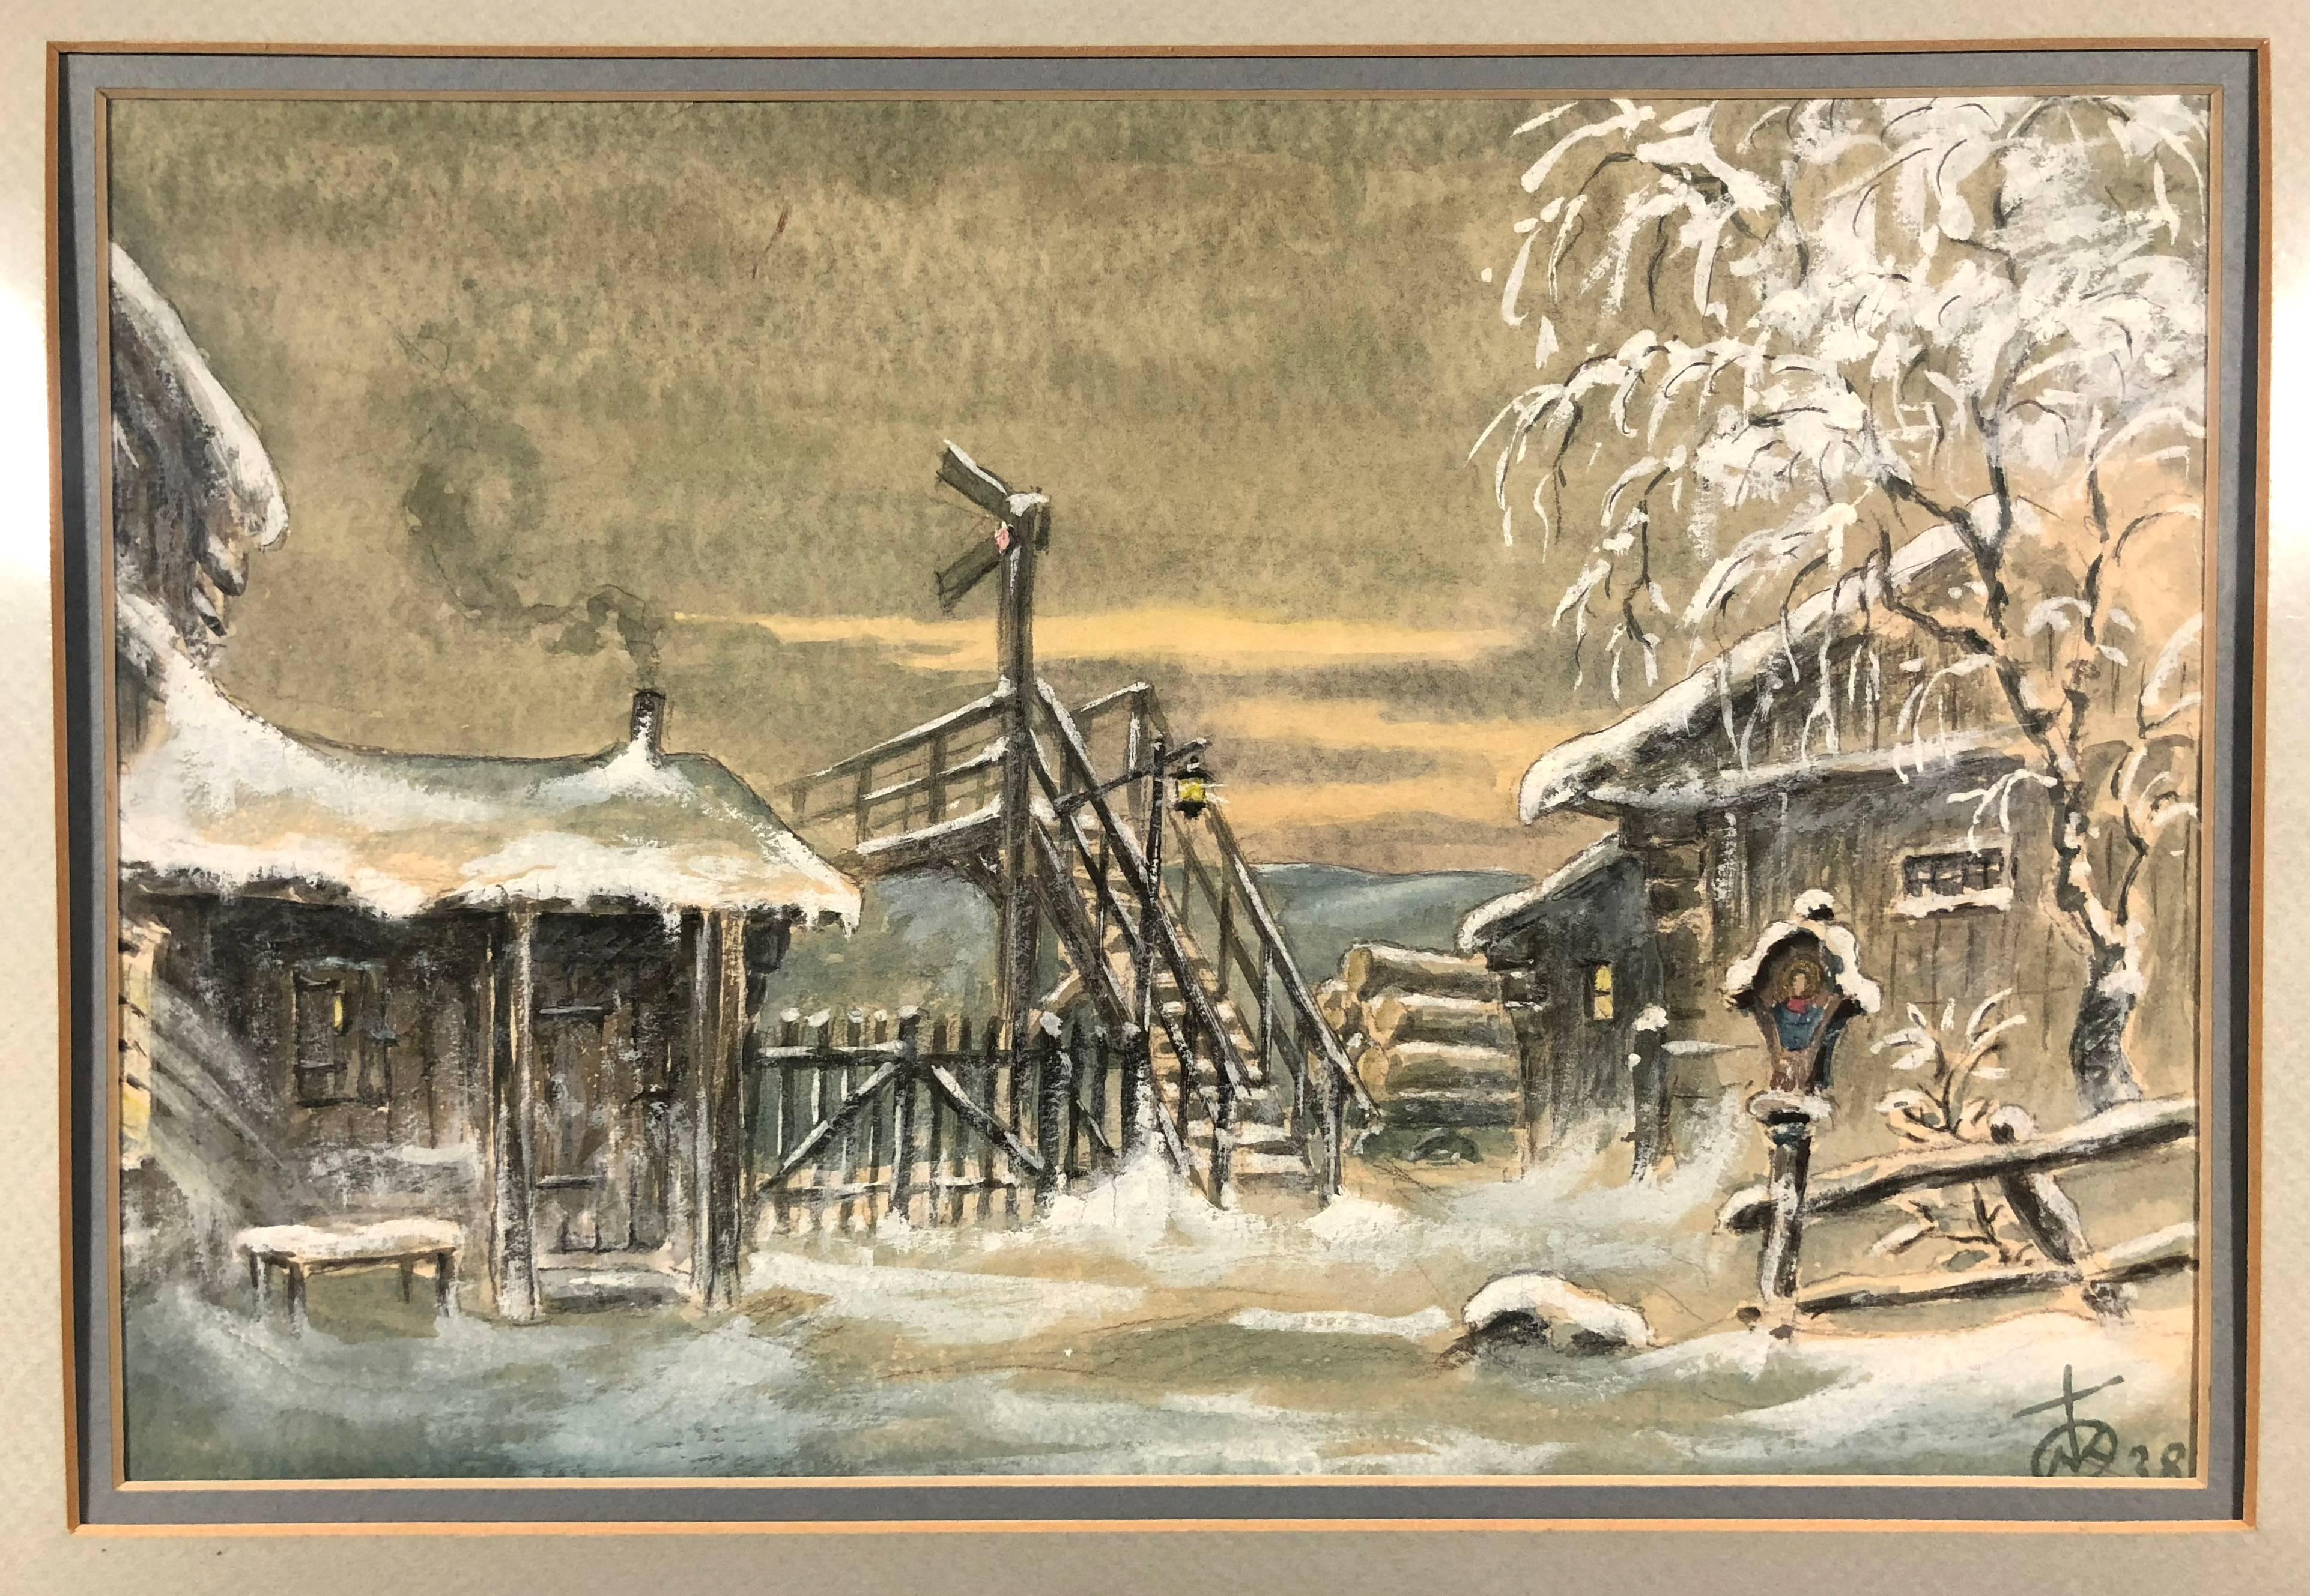 Unknown Landscape Art - Winter Cabin Scene 1938